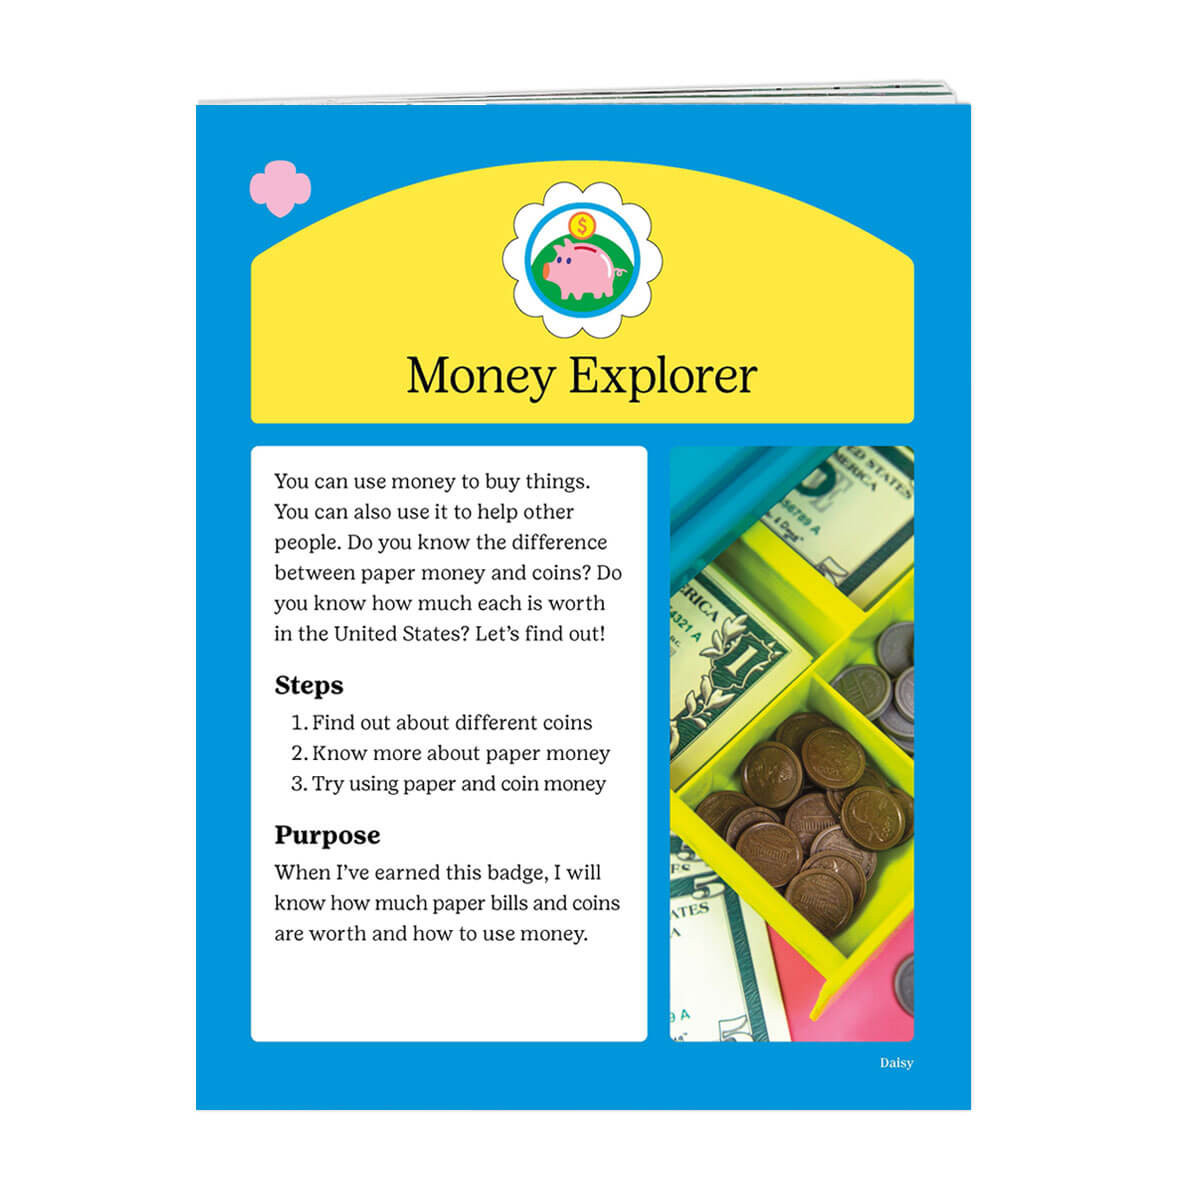 Money Explorer Badge Requirements